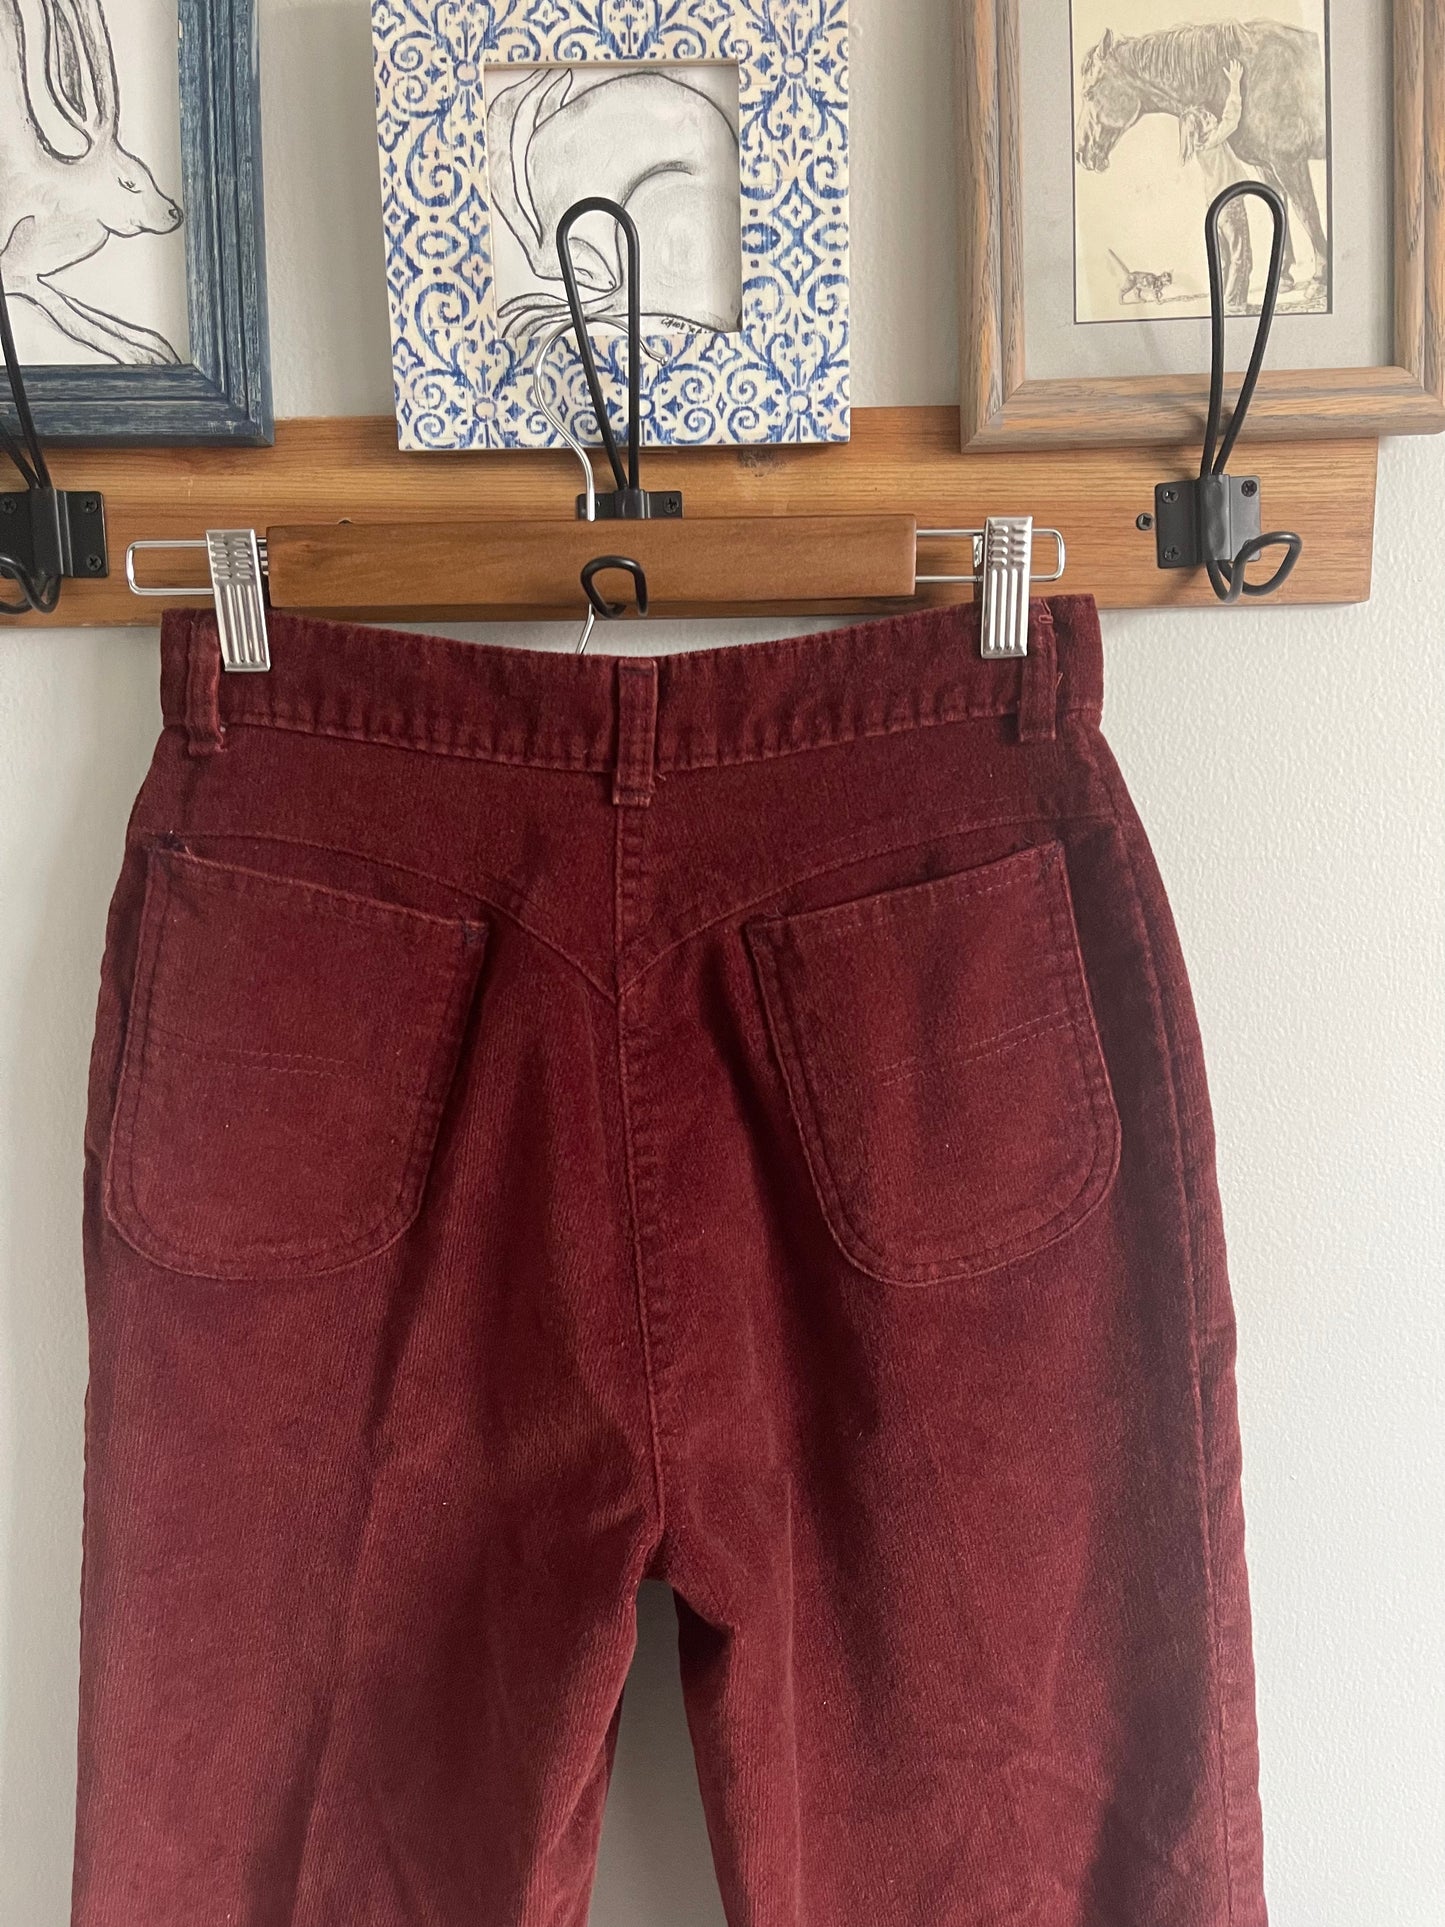 Vintage Burgundy Corduroy Pants